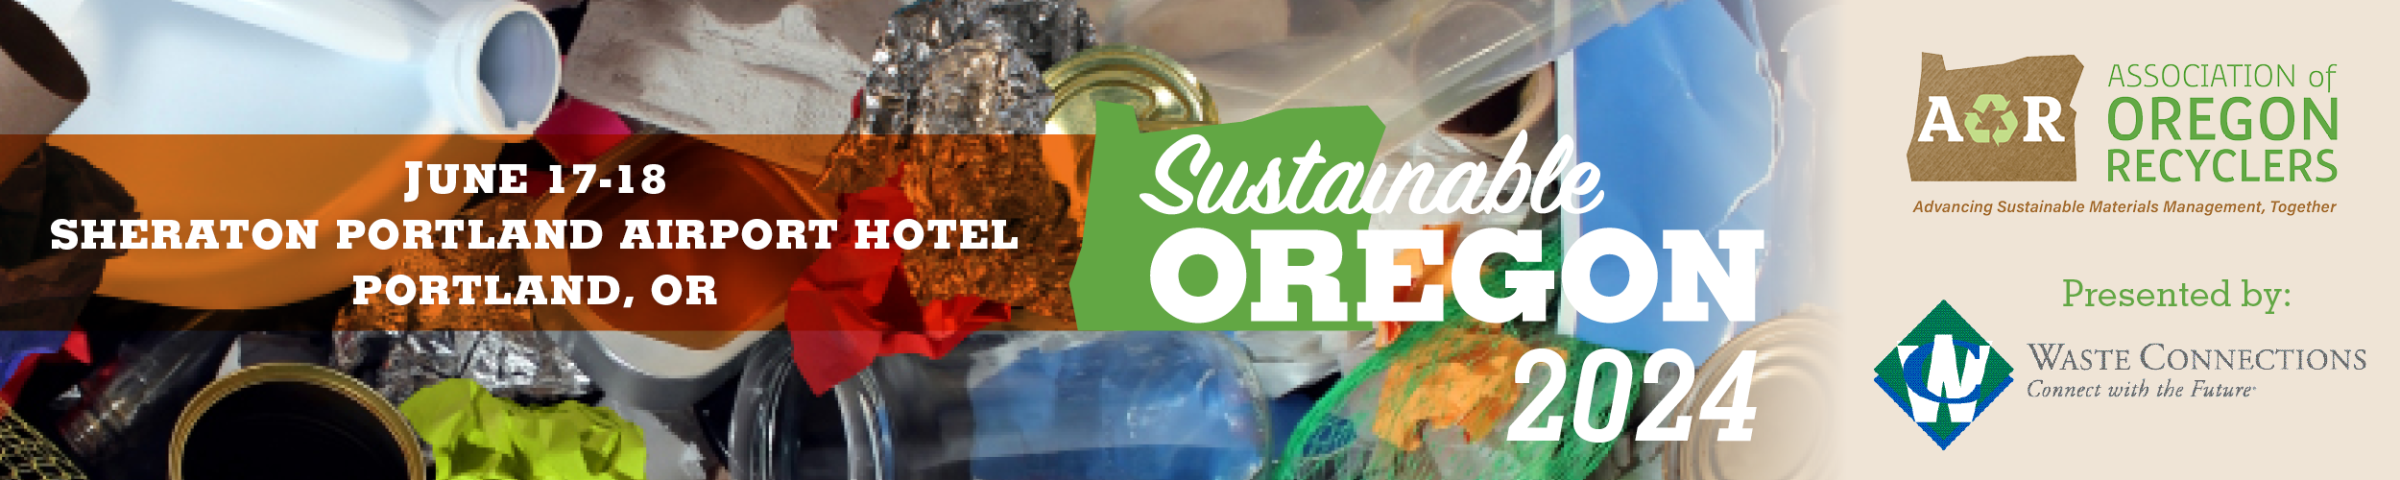 Sustainable Oregon 2024